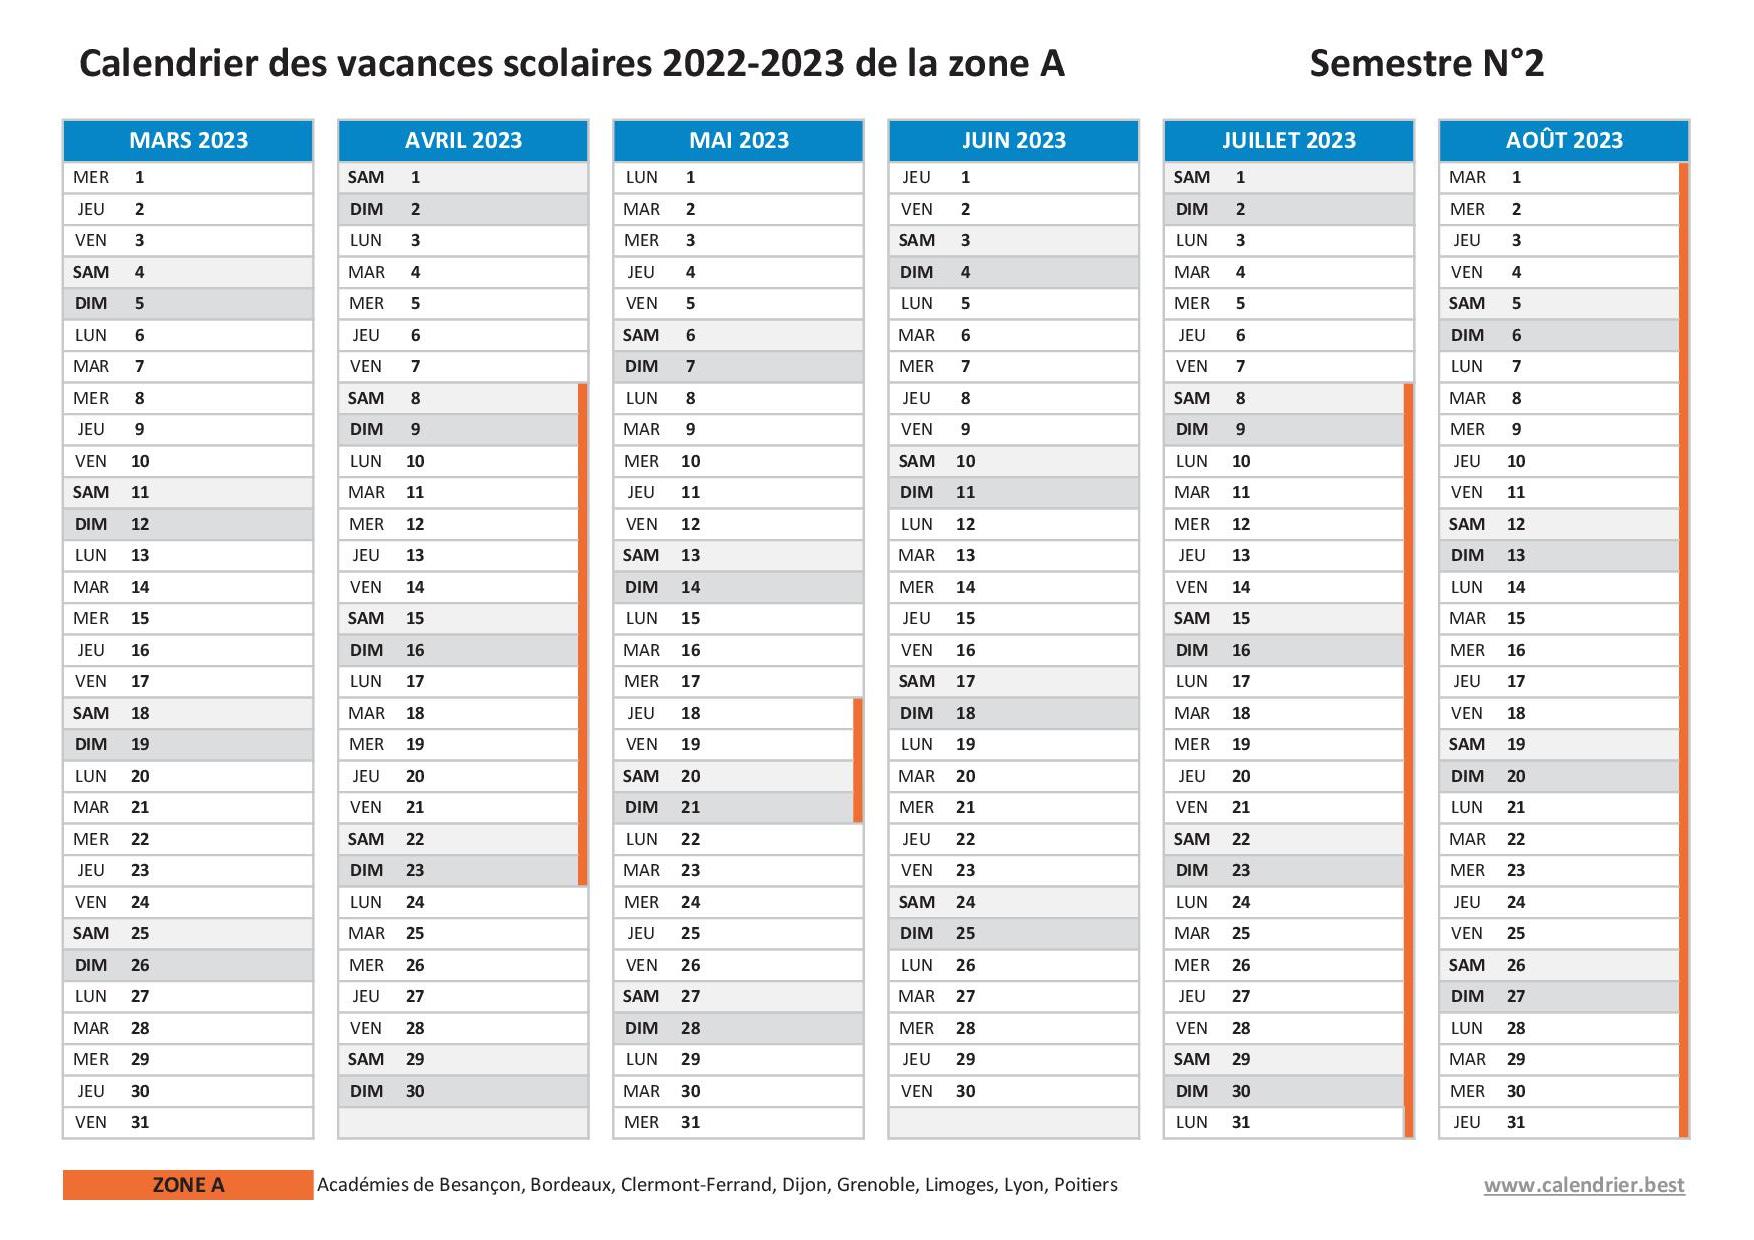 Vacances scolaires 2022 2023 Dijon : dates et calendrier scolaire 2022-2023